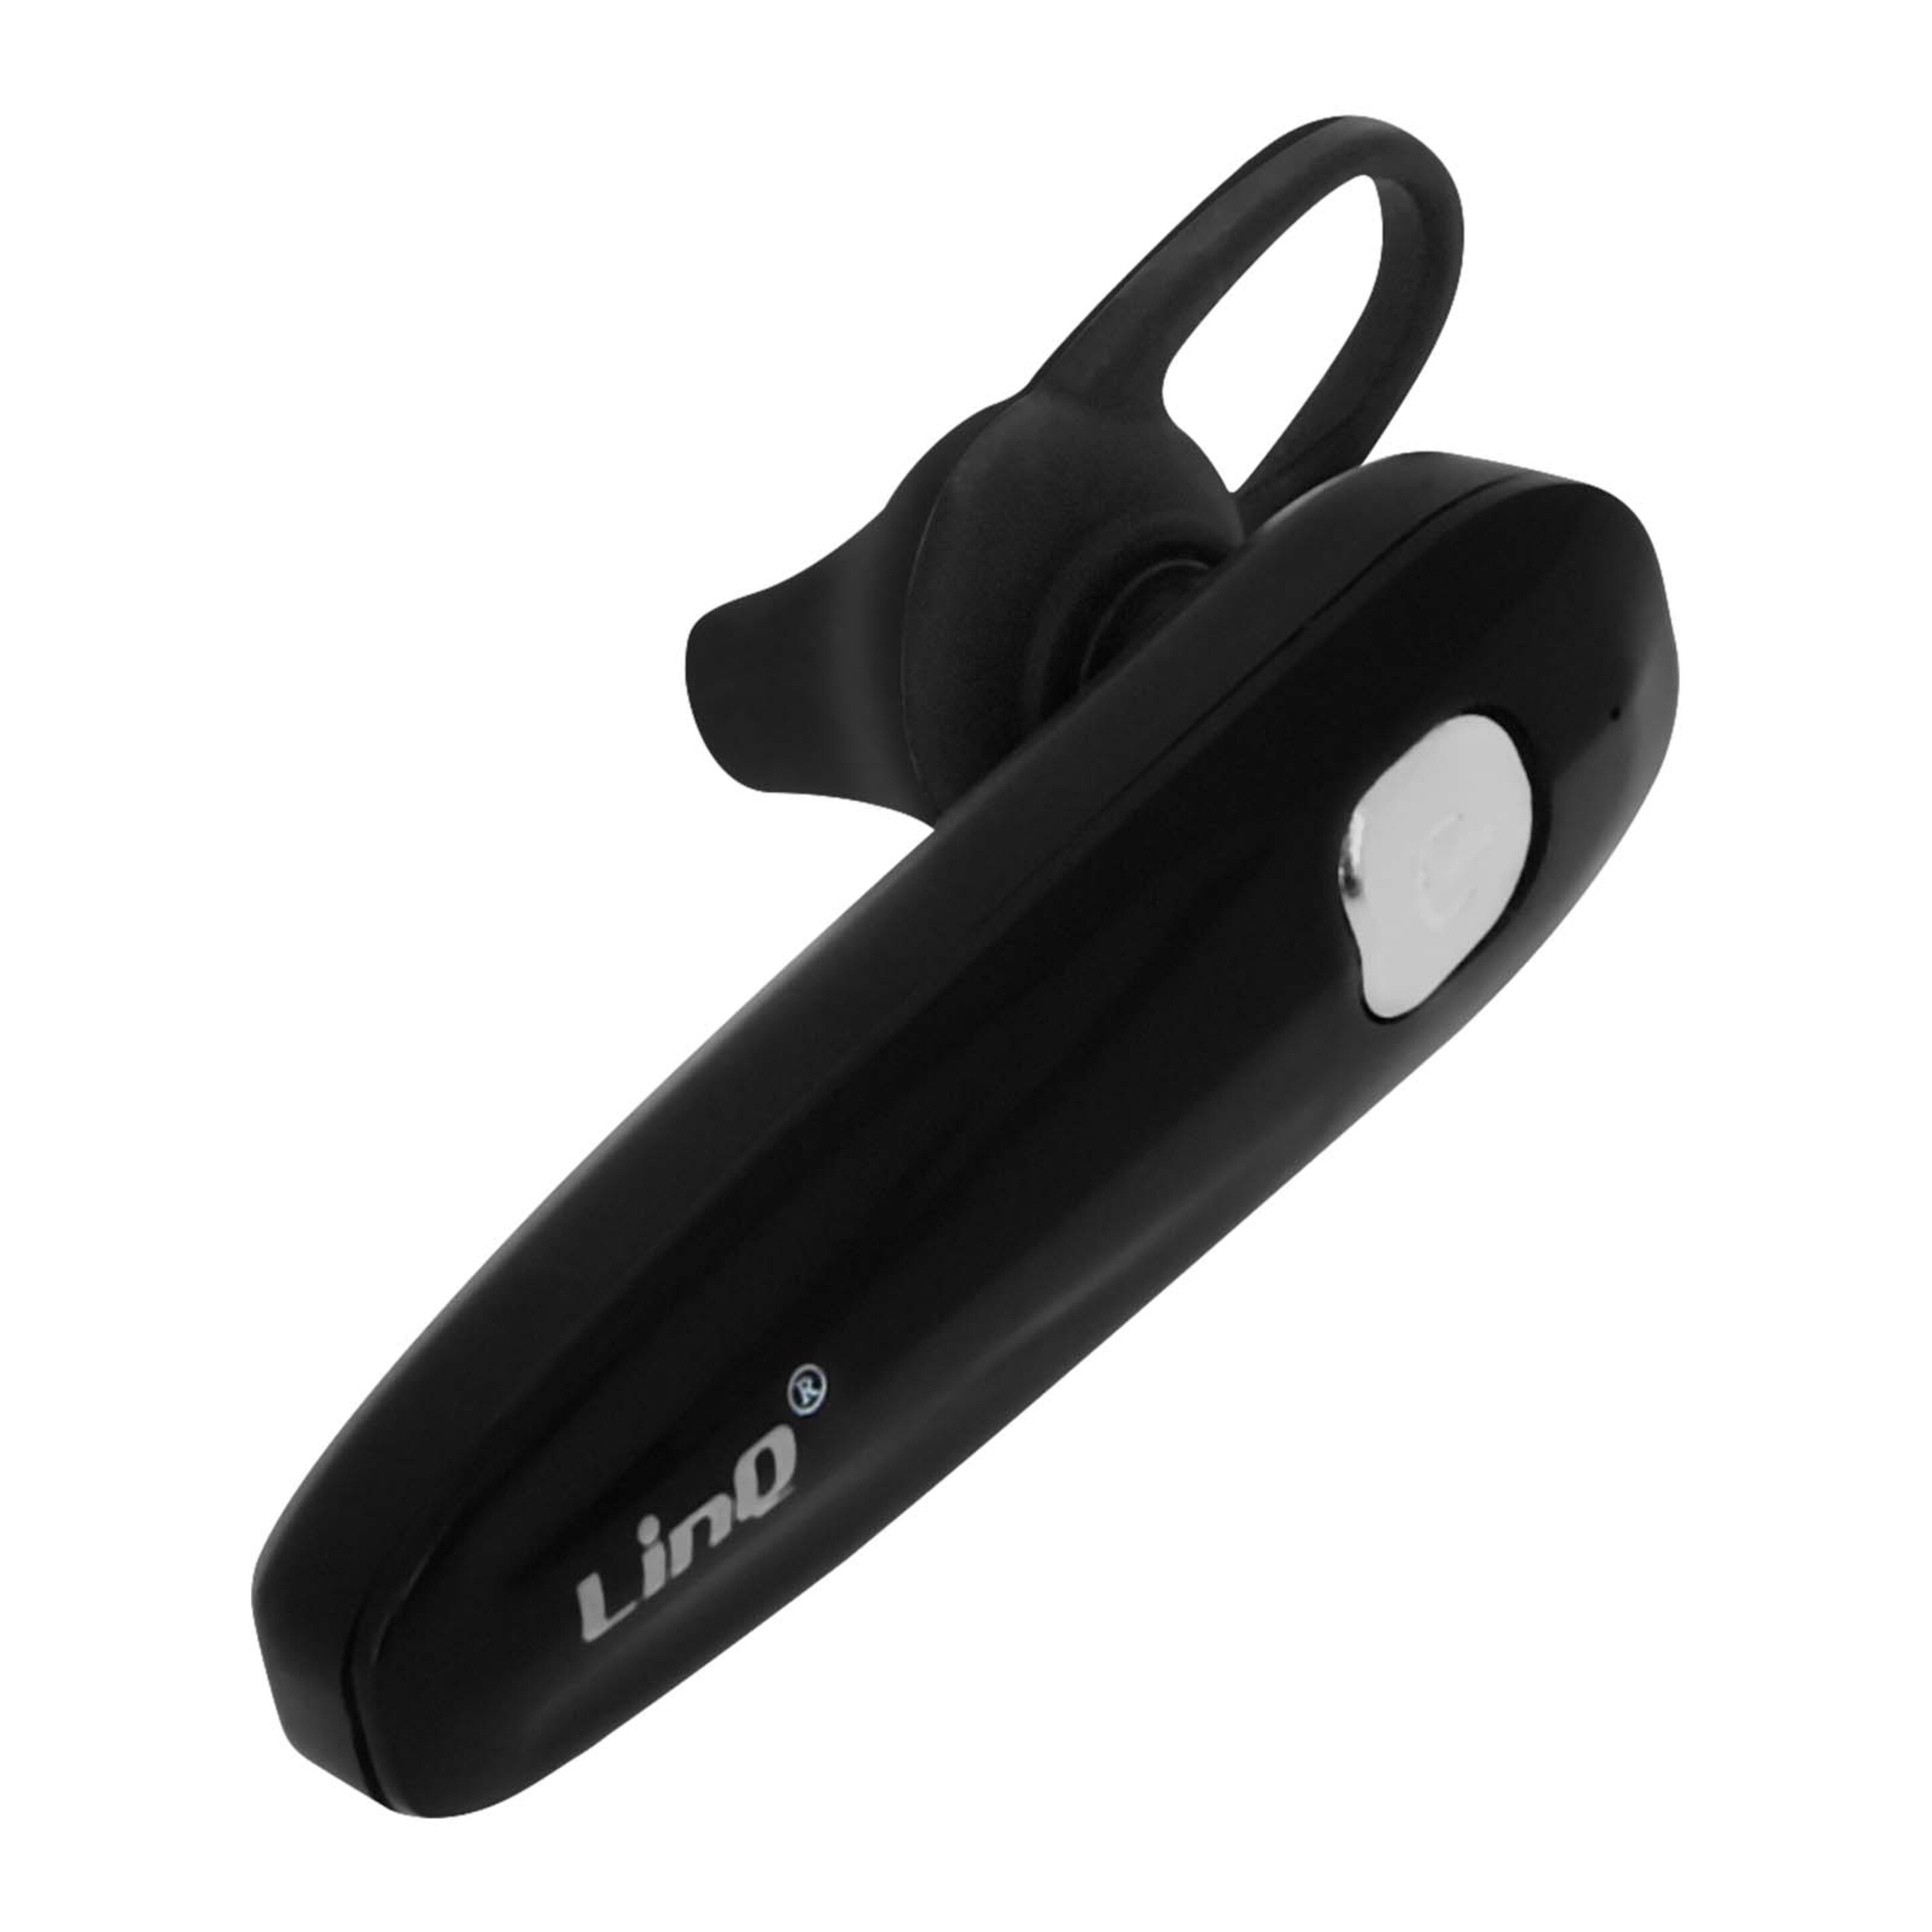 Pinganillo Bluetooth Multipunto De Linq R556 Y 3h De Autonomía